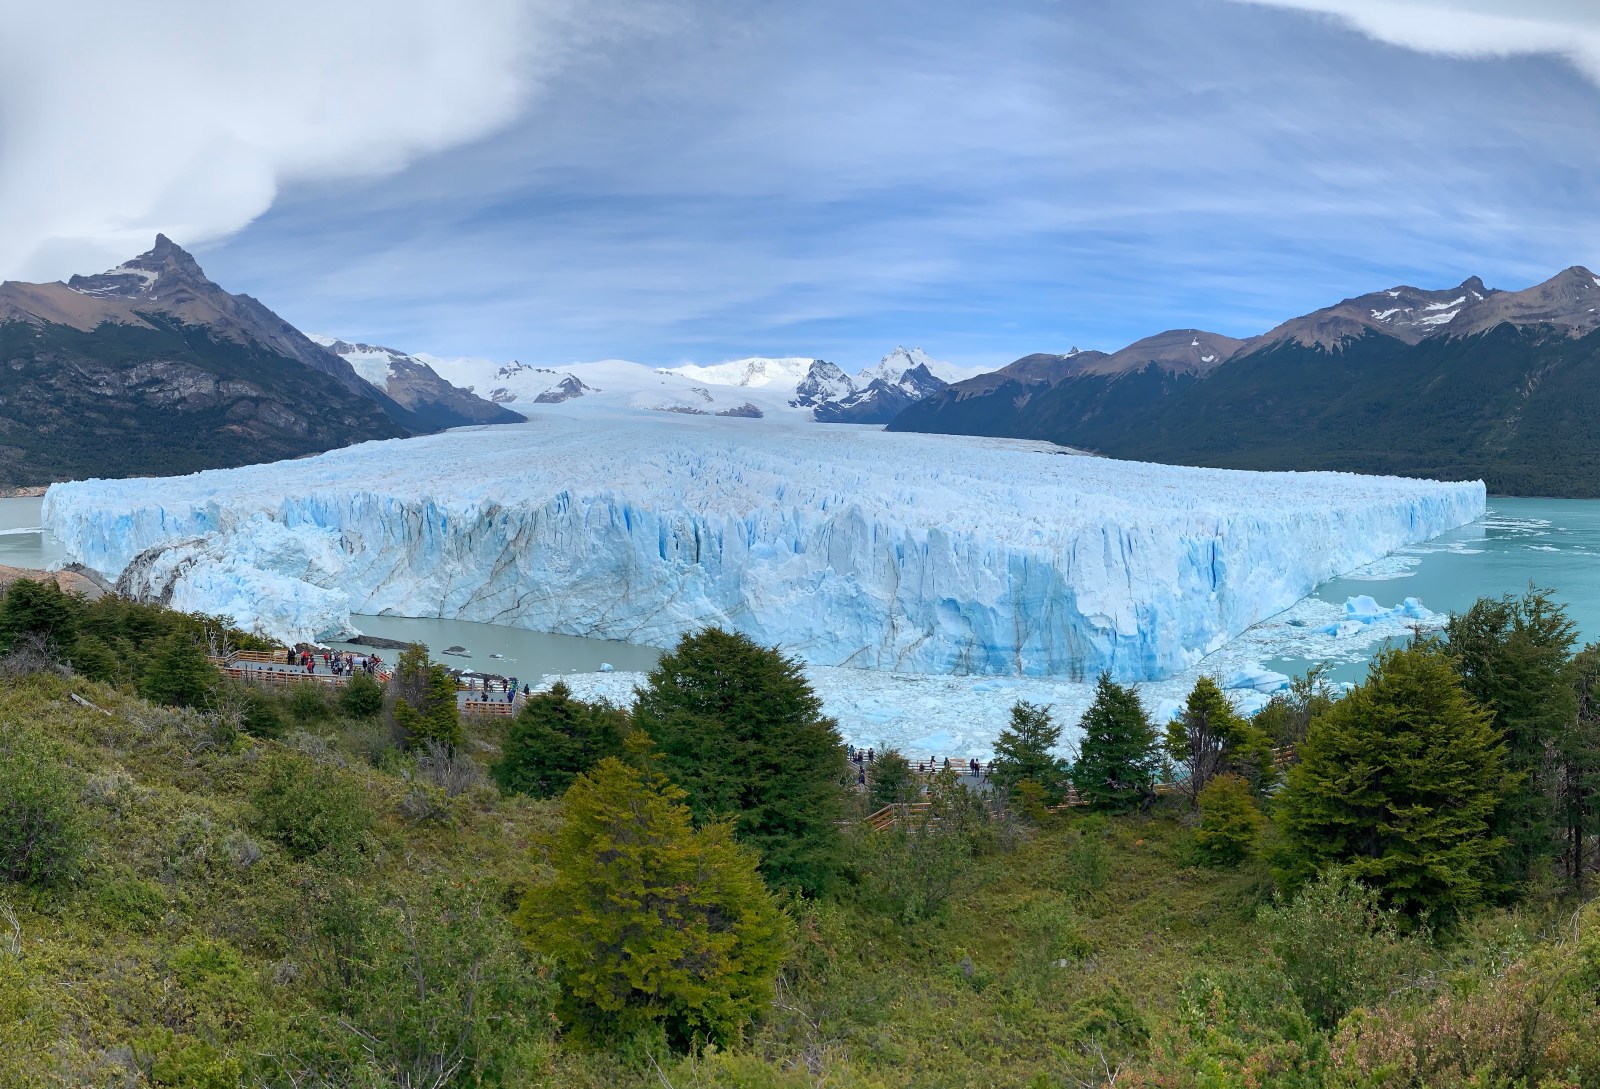 Perito Moreno glacier from El Calafate